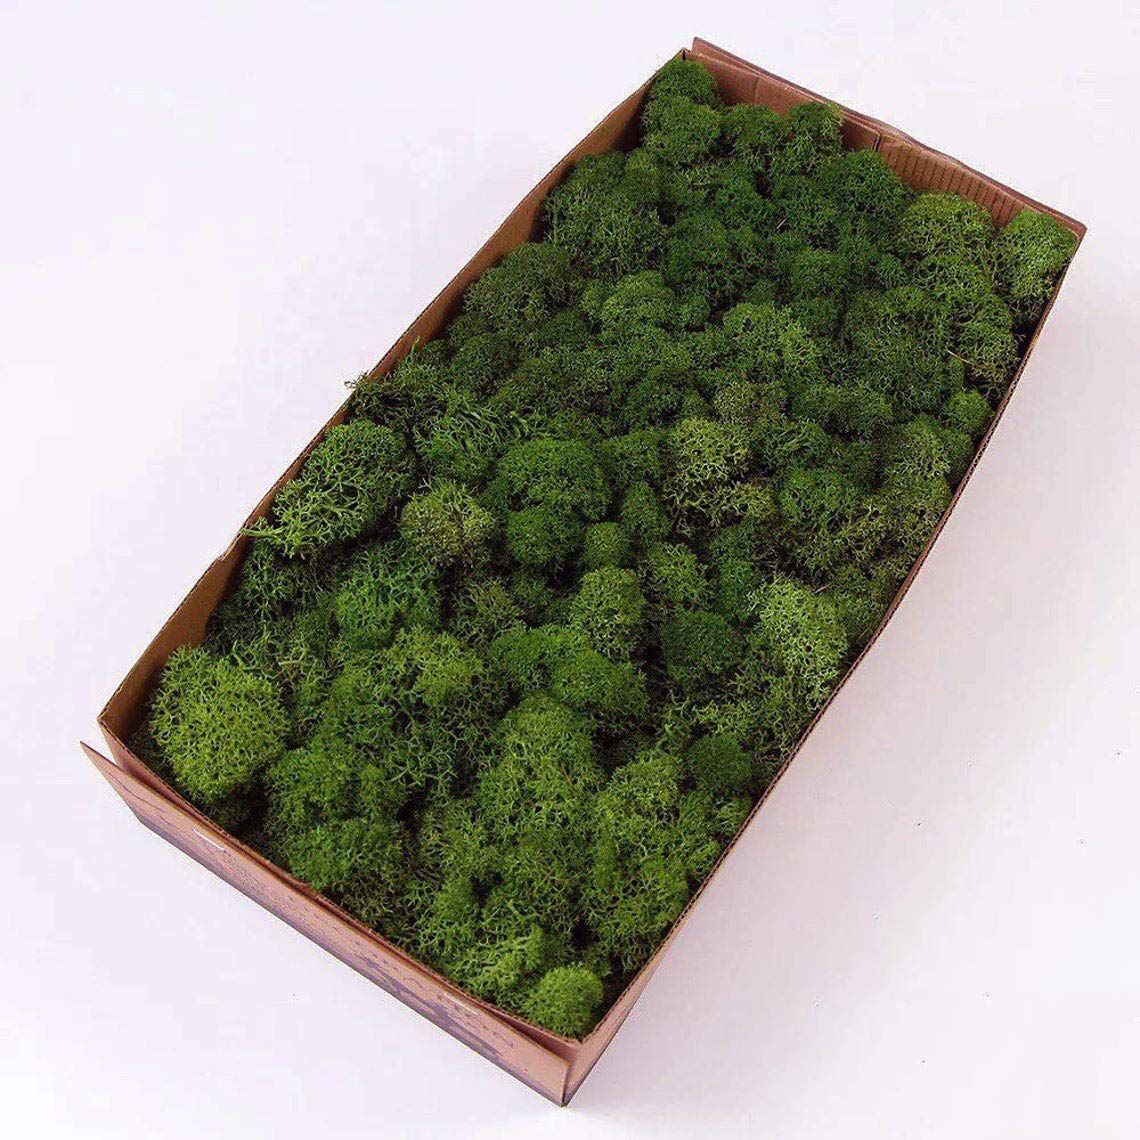 Prefleur Preserved Reindeer Moss Natural Green DIY Kit Terrariums Gardenning Art Wall Decor Flori... | Amazon (US)